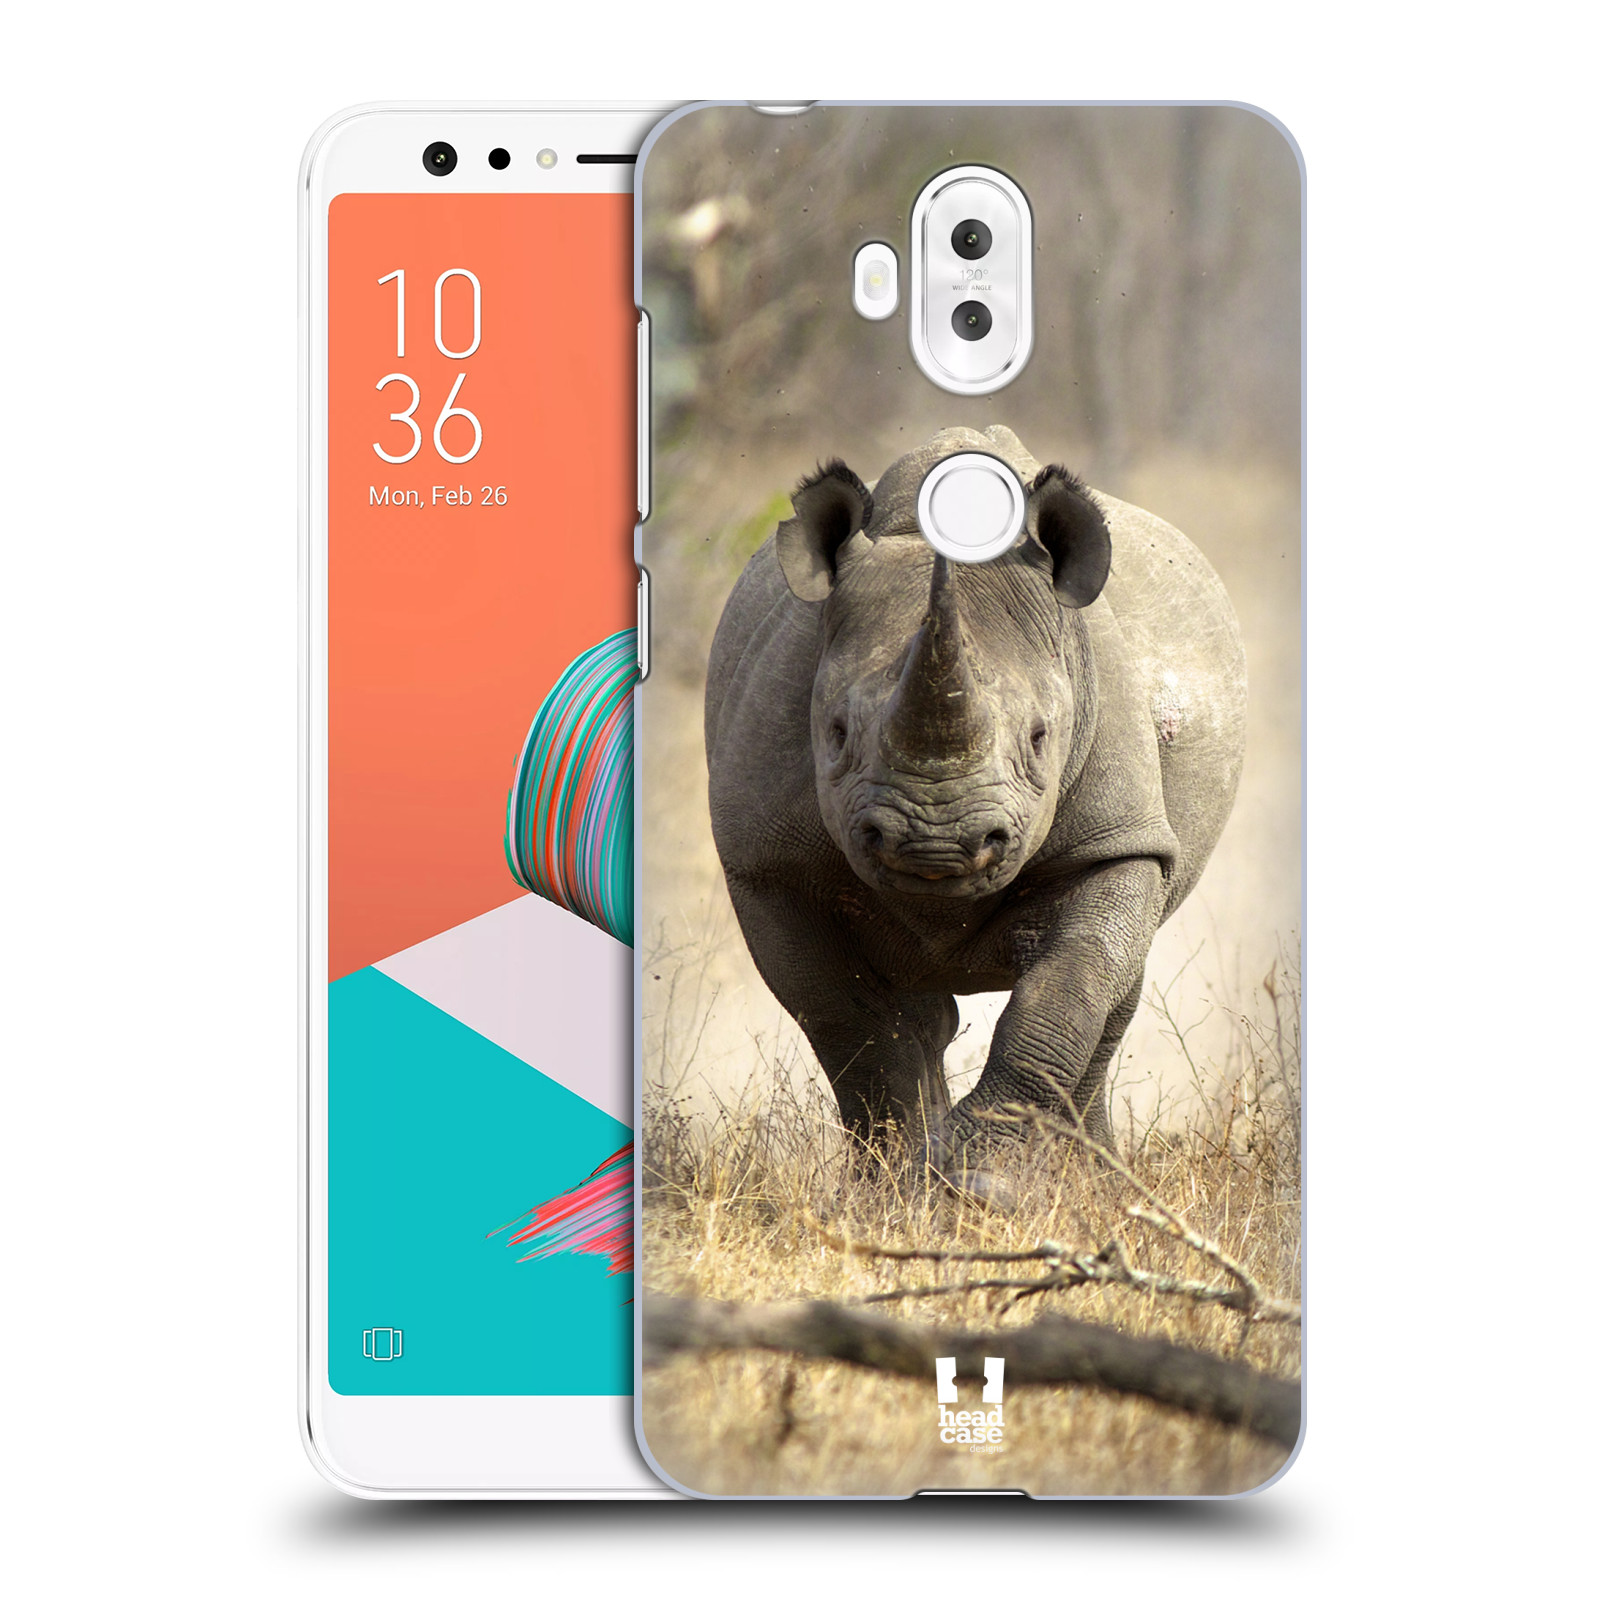 HEAD CASE plastový obal na mobil Asus Zenfone 5 LITE ZC600KL vzor Divočina, Divoký život a zvířata foto AFRIKA BĚŽÍCÍ NOSOROŽEC